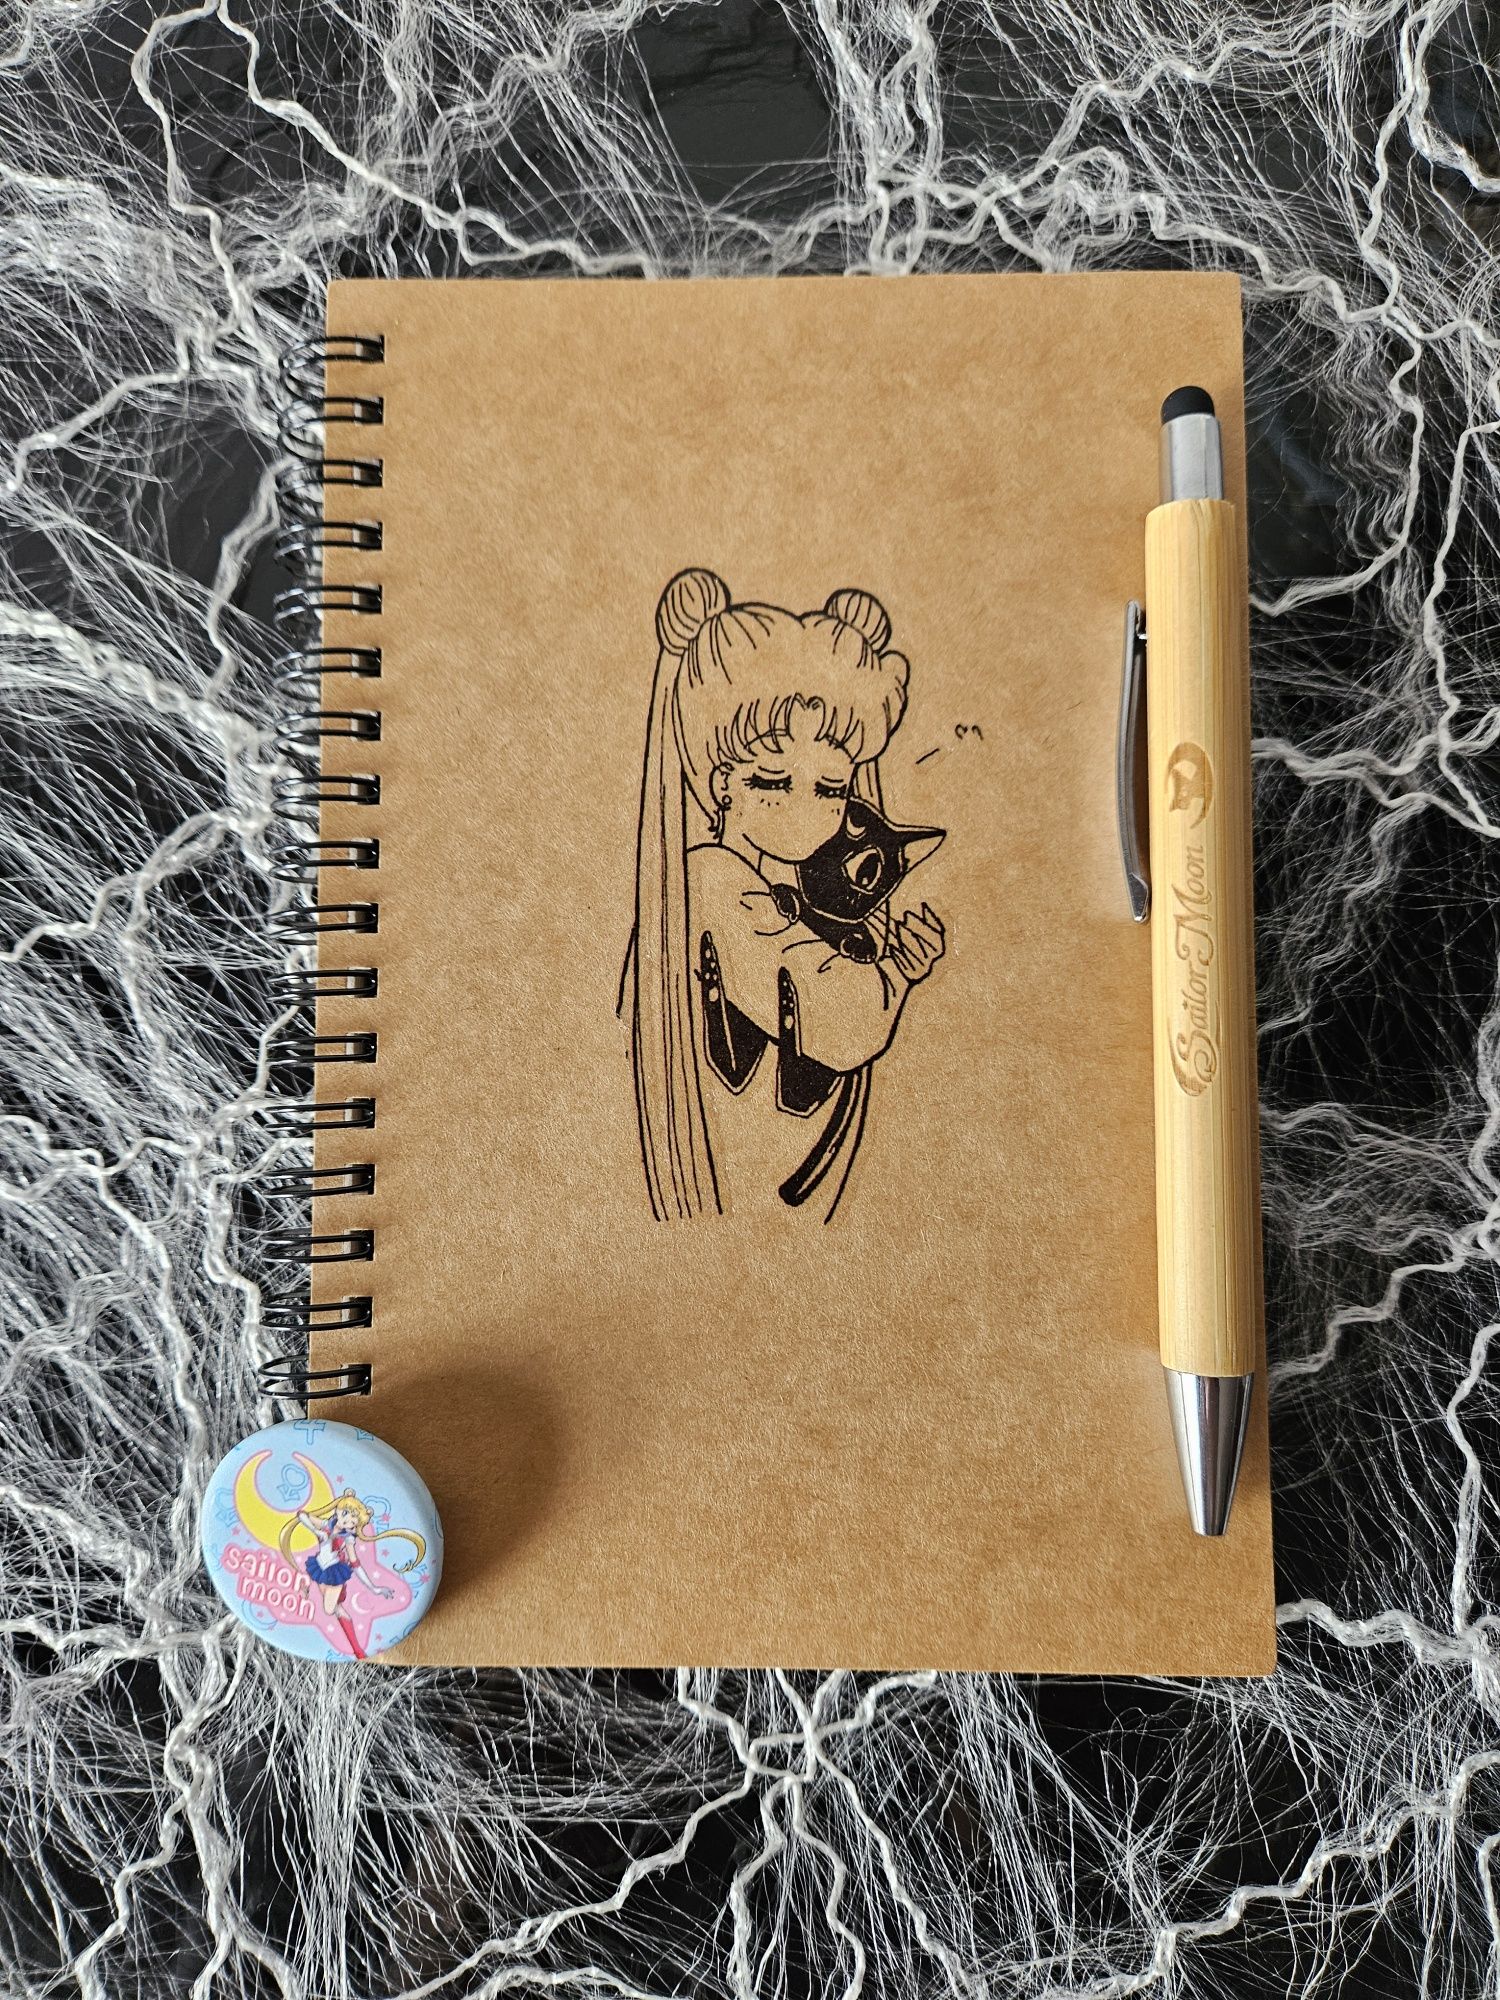 Sailor moon - Caderno com caneta bambu gravada a laser - ÚNICO